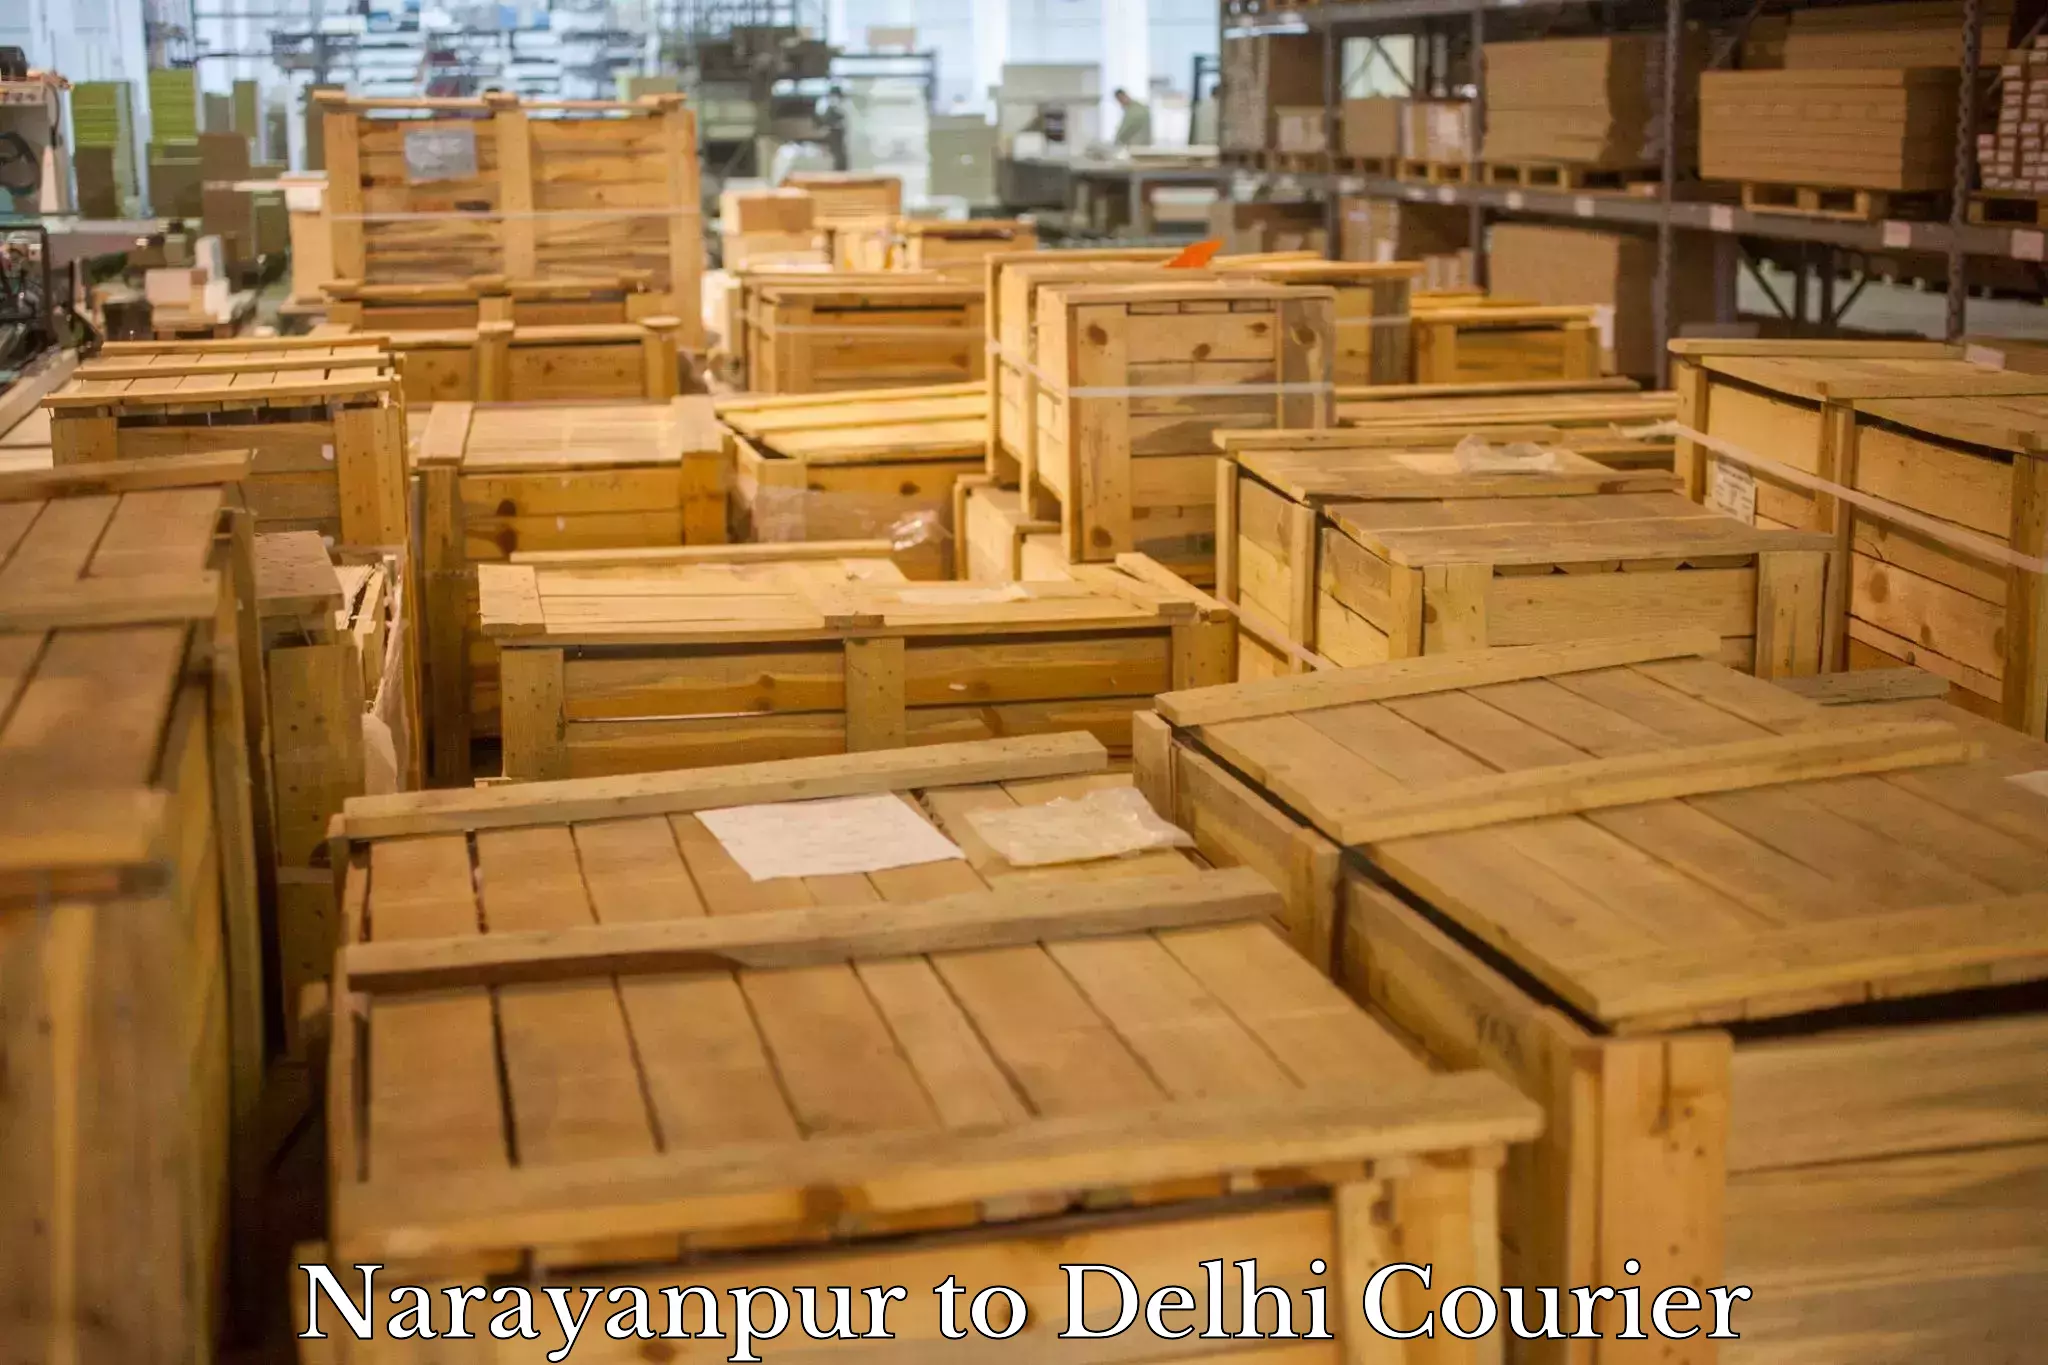 Premium delivery services Narayanpur to Delhi